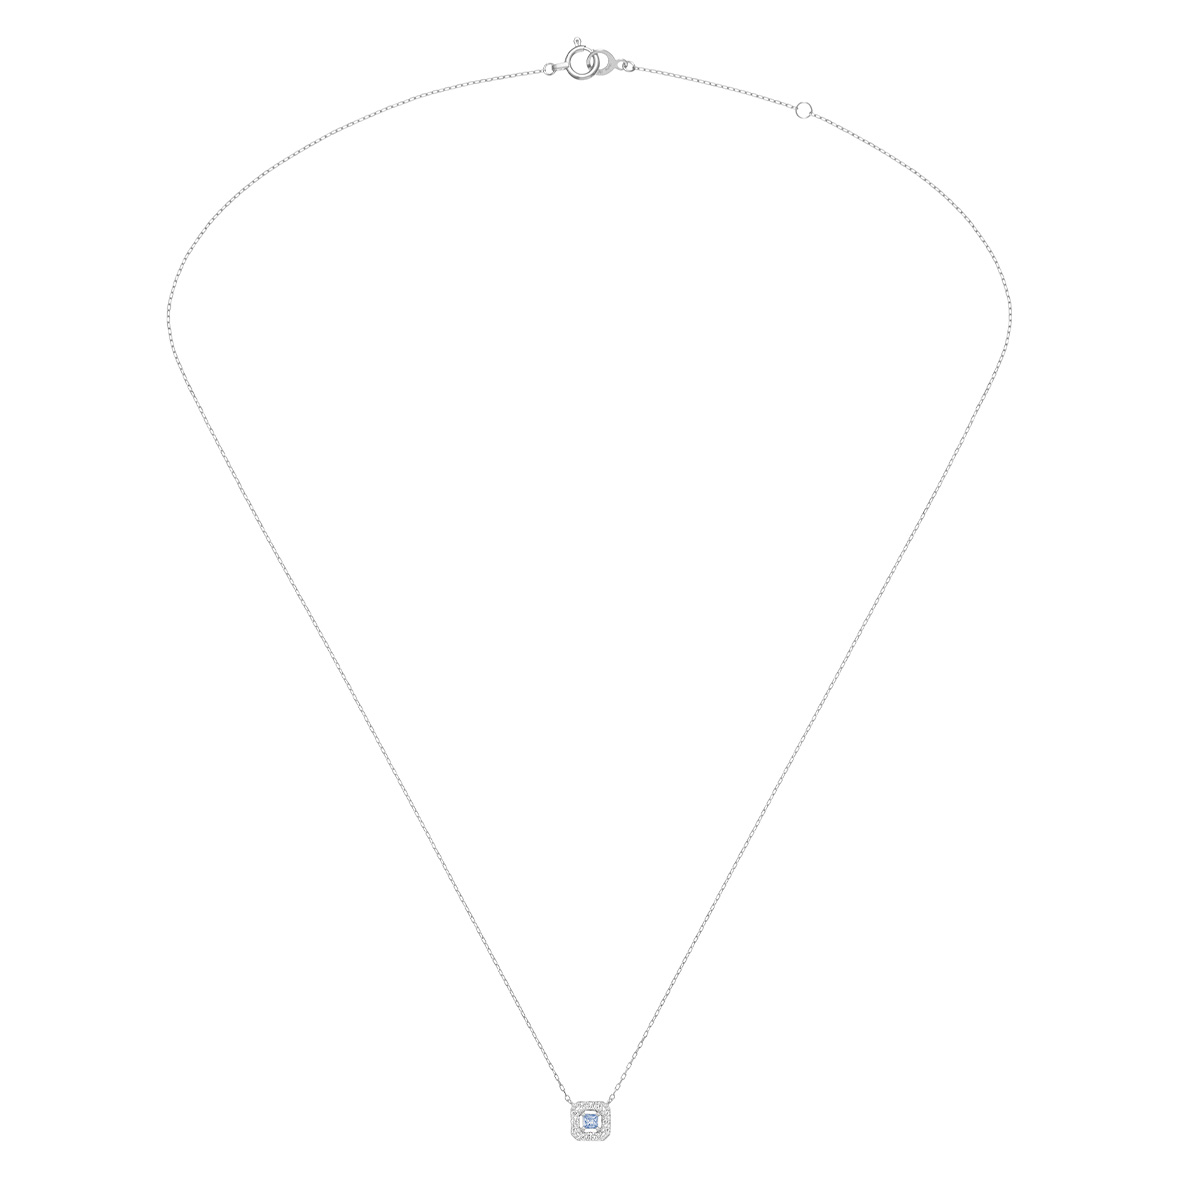 tina coffret necklace (blue sapphire)